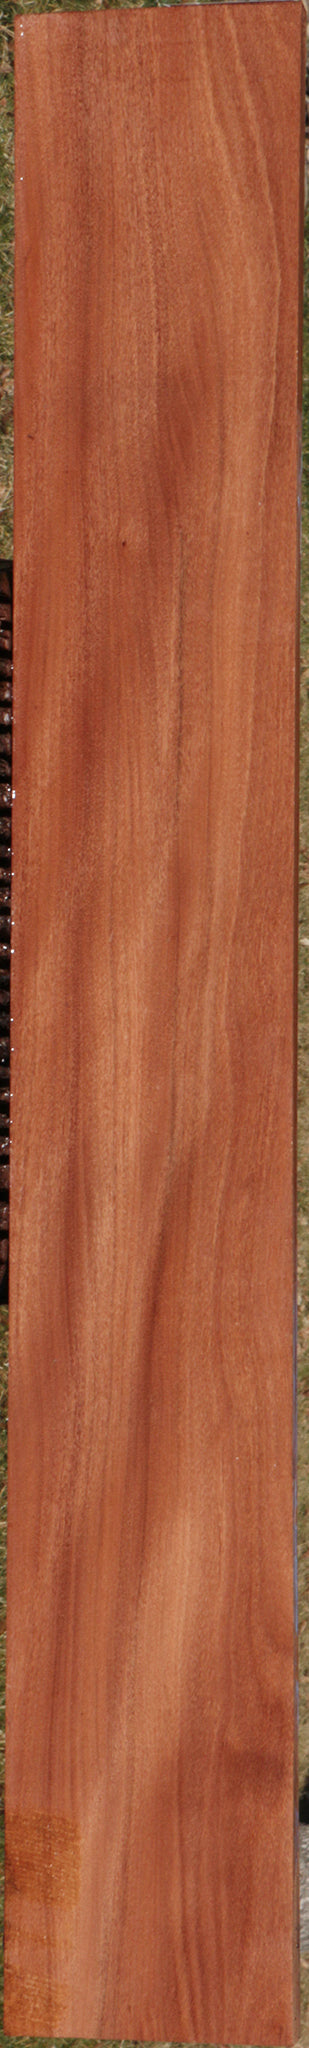 Brush Box Micro Lumber